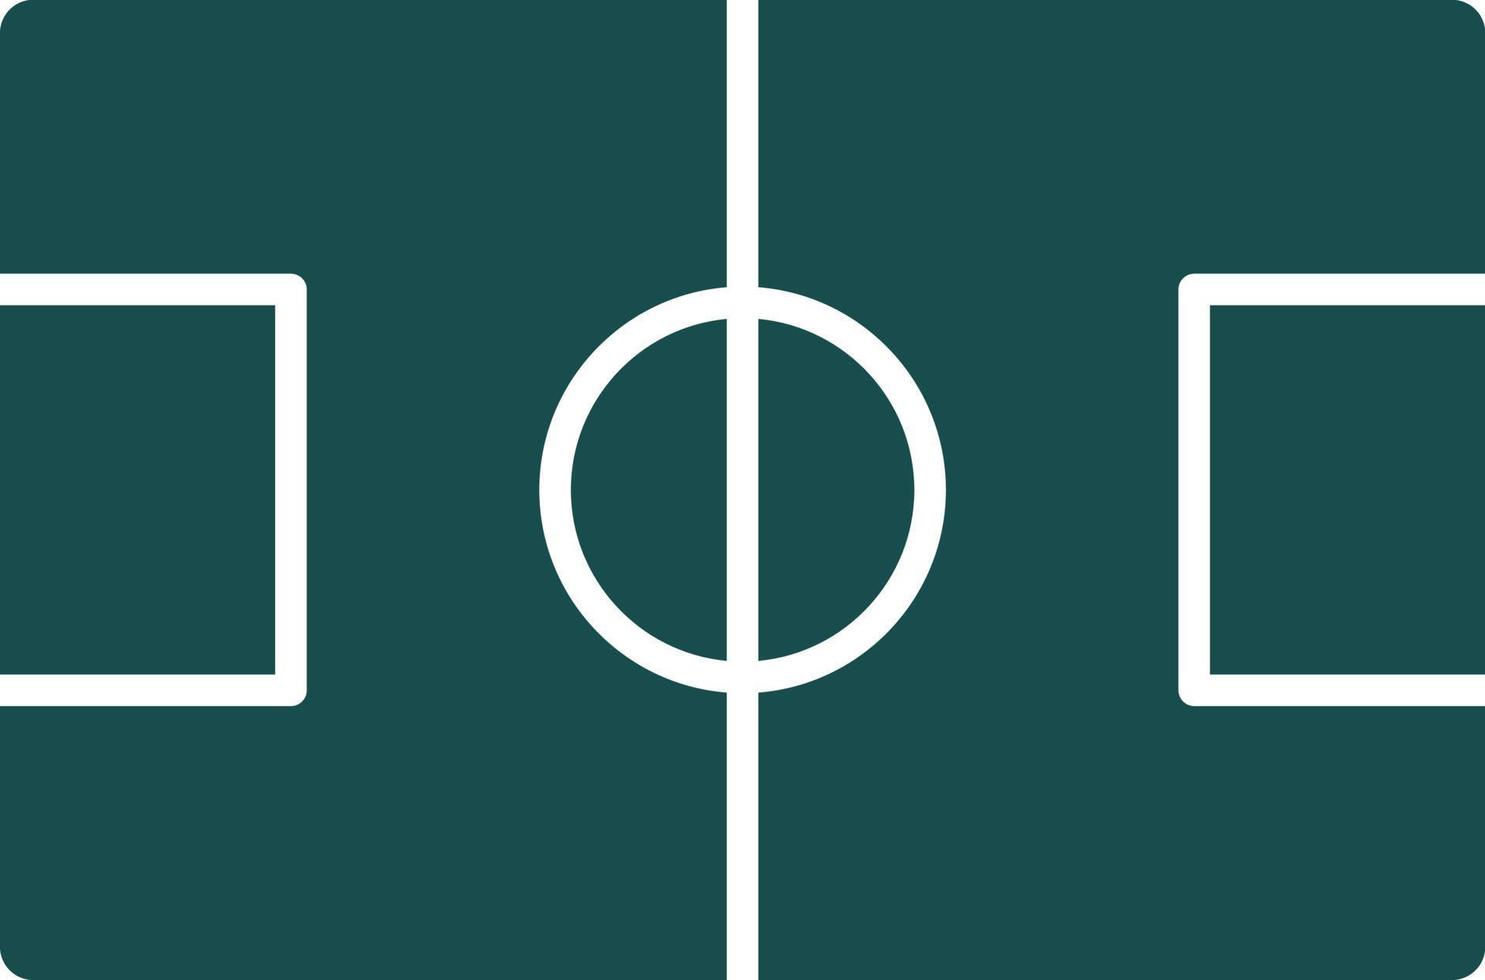 calcio campo vettore icona design